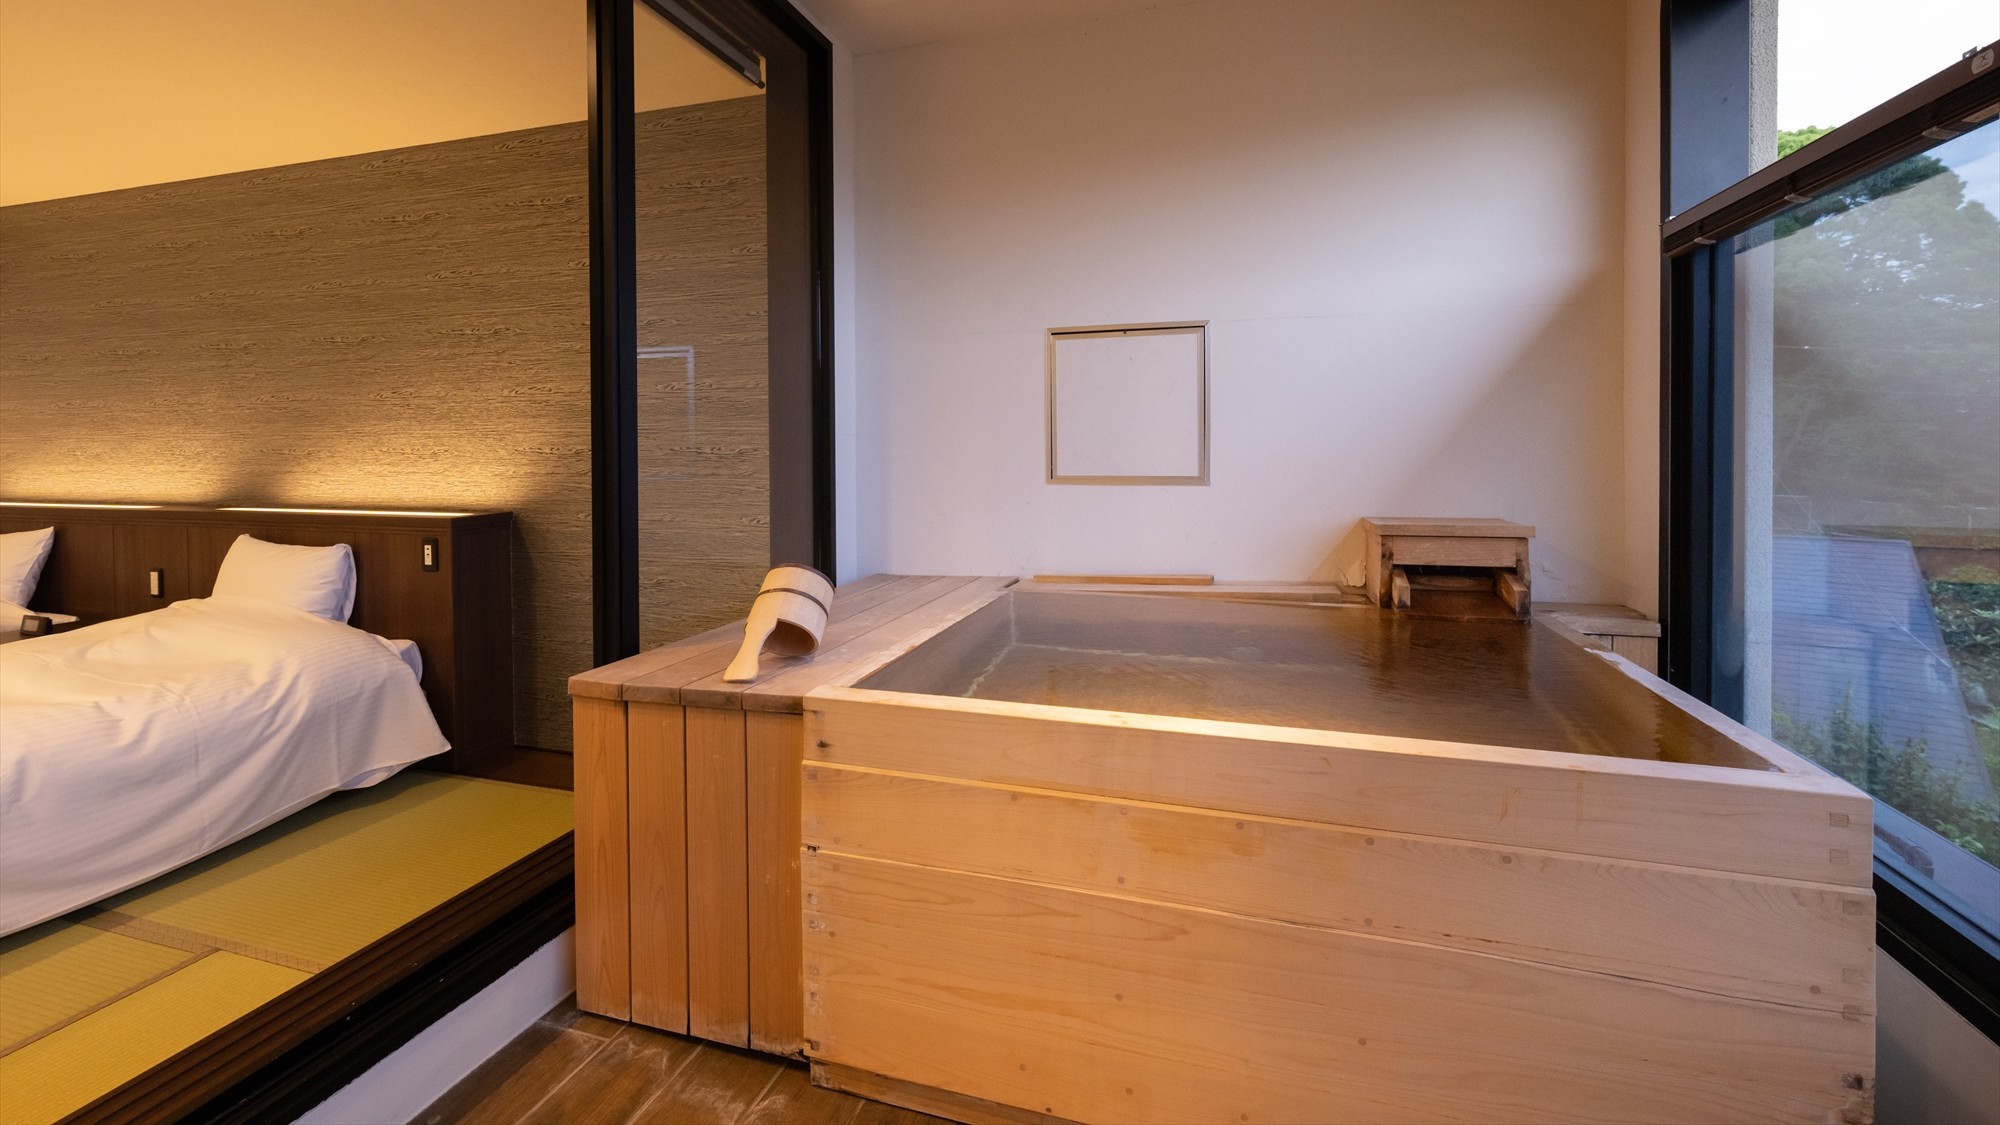 【露天風呂付き客室和モダンツイン10畳】客室専用の露天風呂を設えたお部屋です。※写真は一例